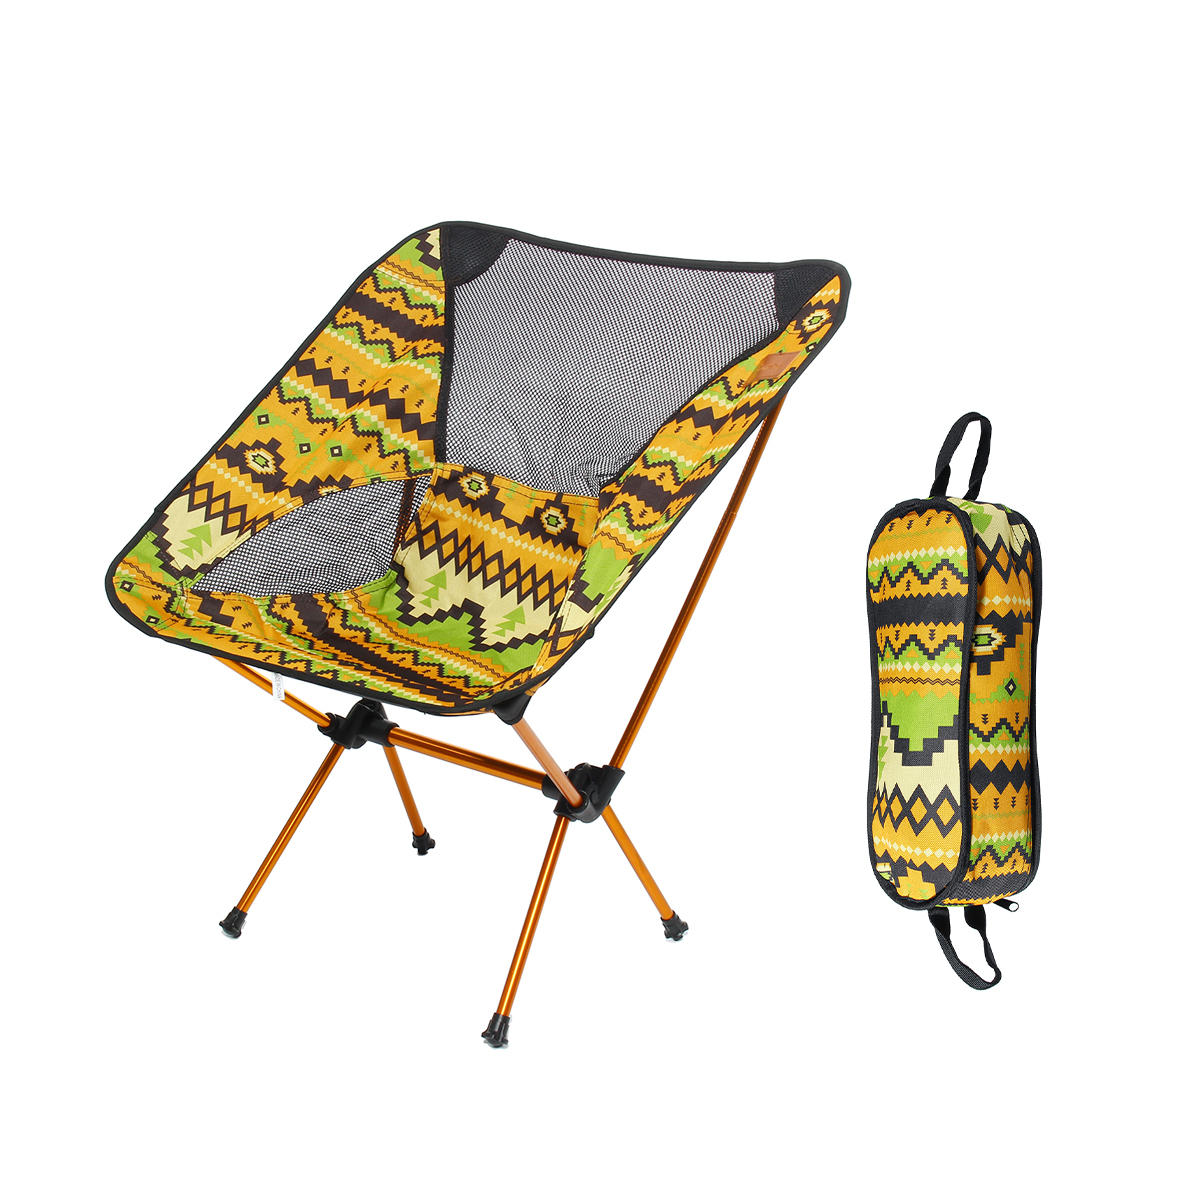 Chaise pliante portable en alliage d'aluminium pour barbecue et camping, charge maximale de 150 kg.